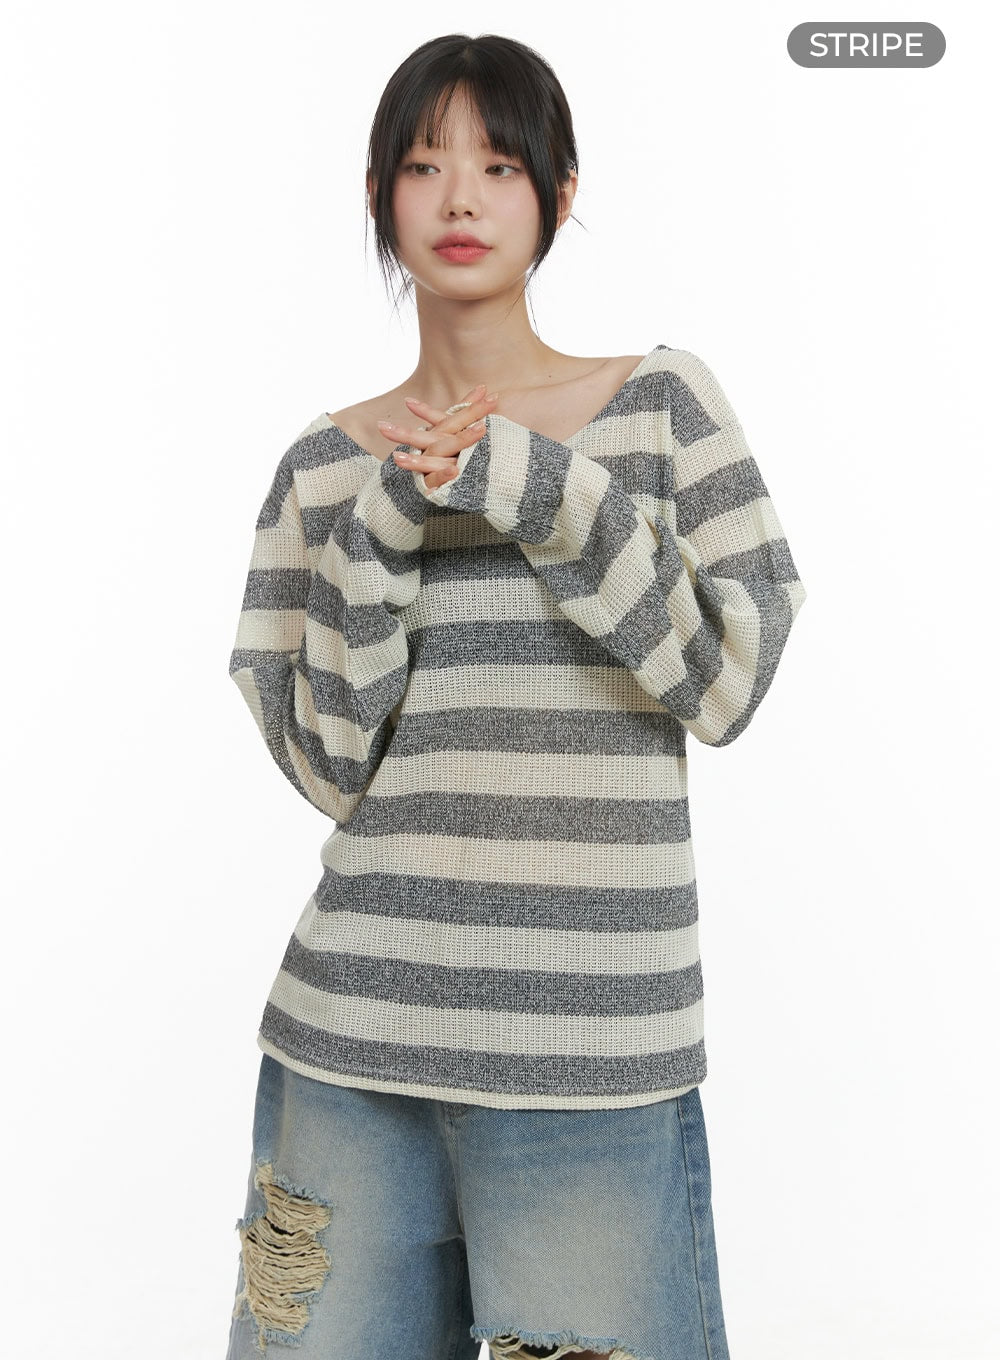 sheer-bliss-off-shoulder-sweater-cl412 / Stripe